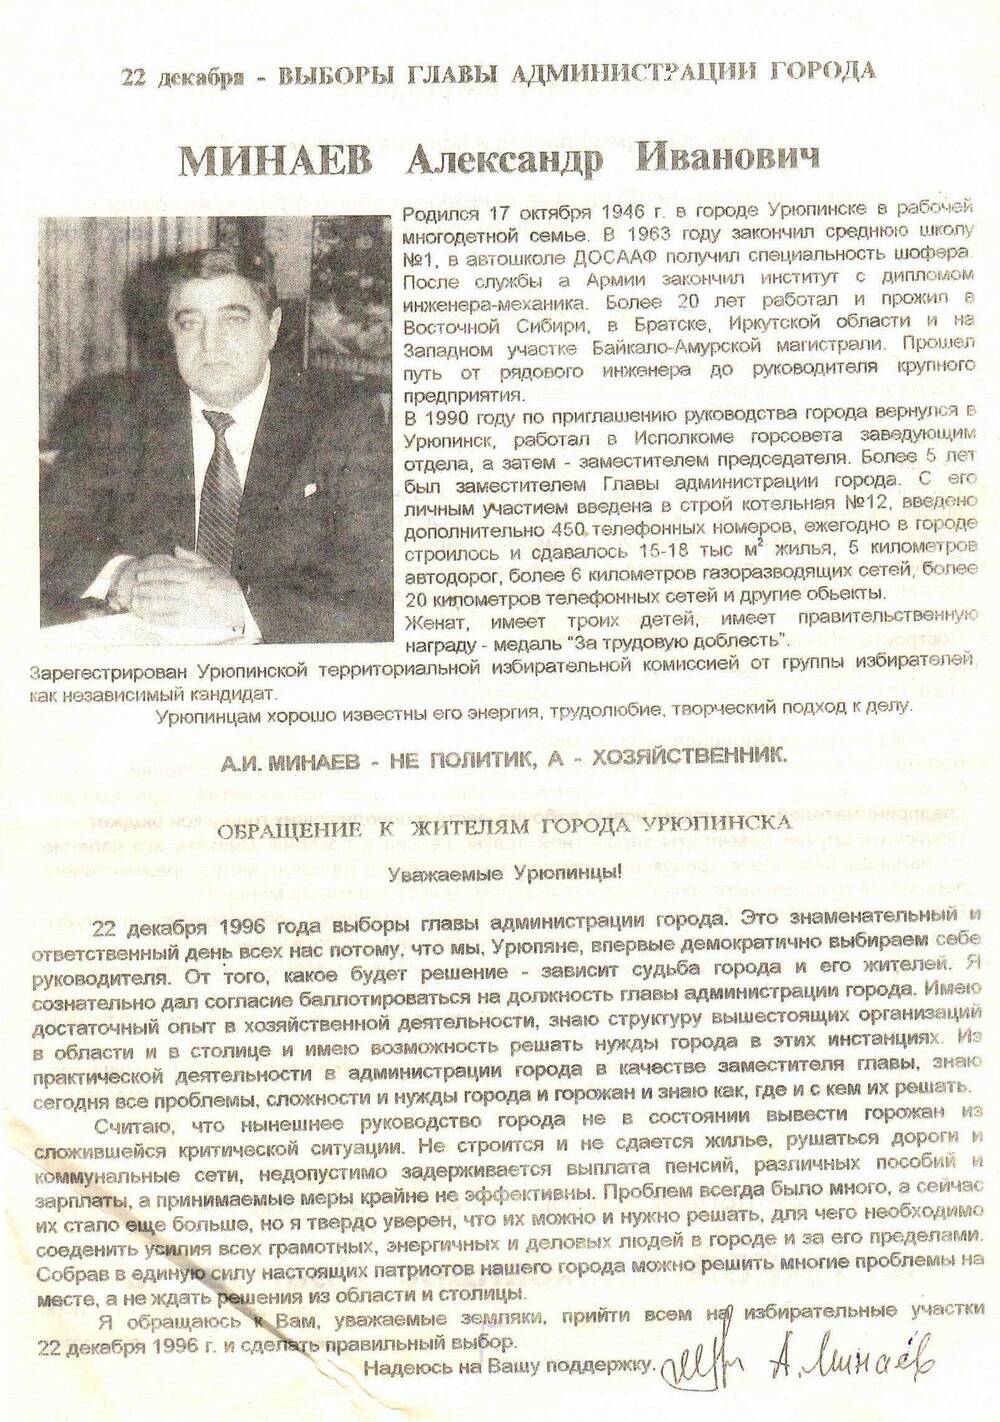 Предвыборная листовка Минаева А.И. на должность главы администрации г.Урюпинска